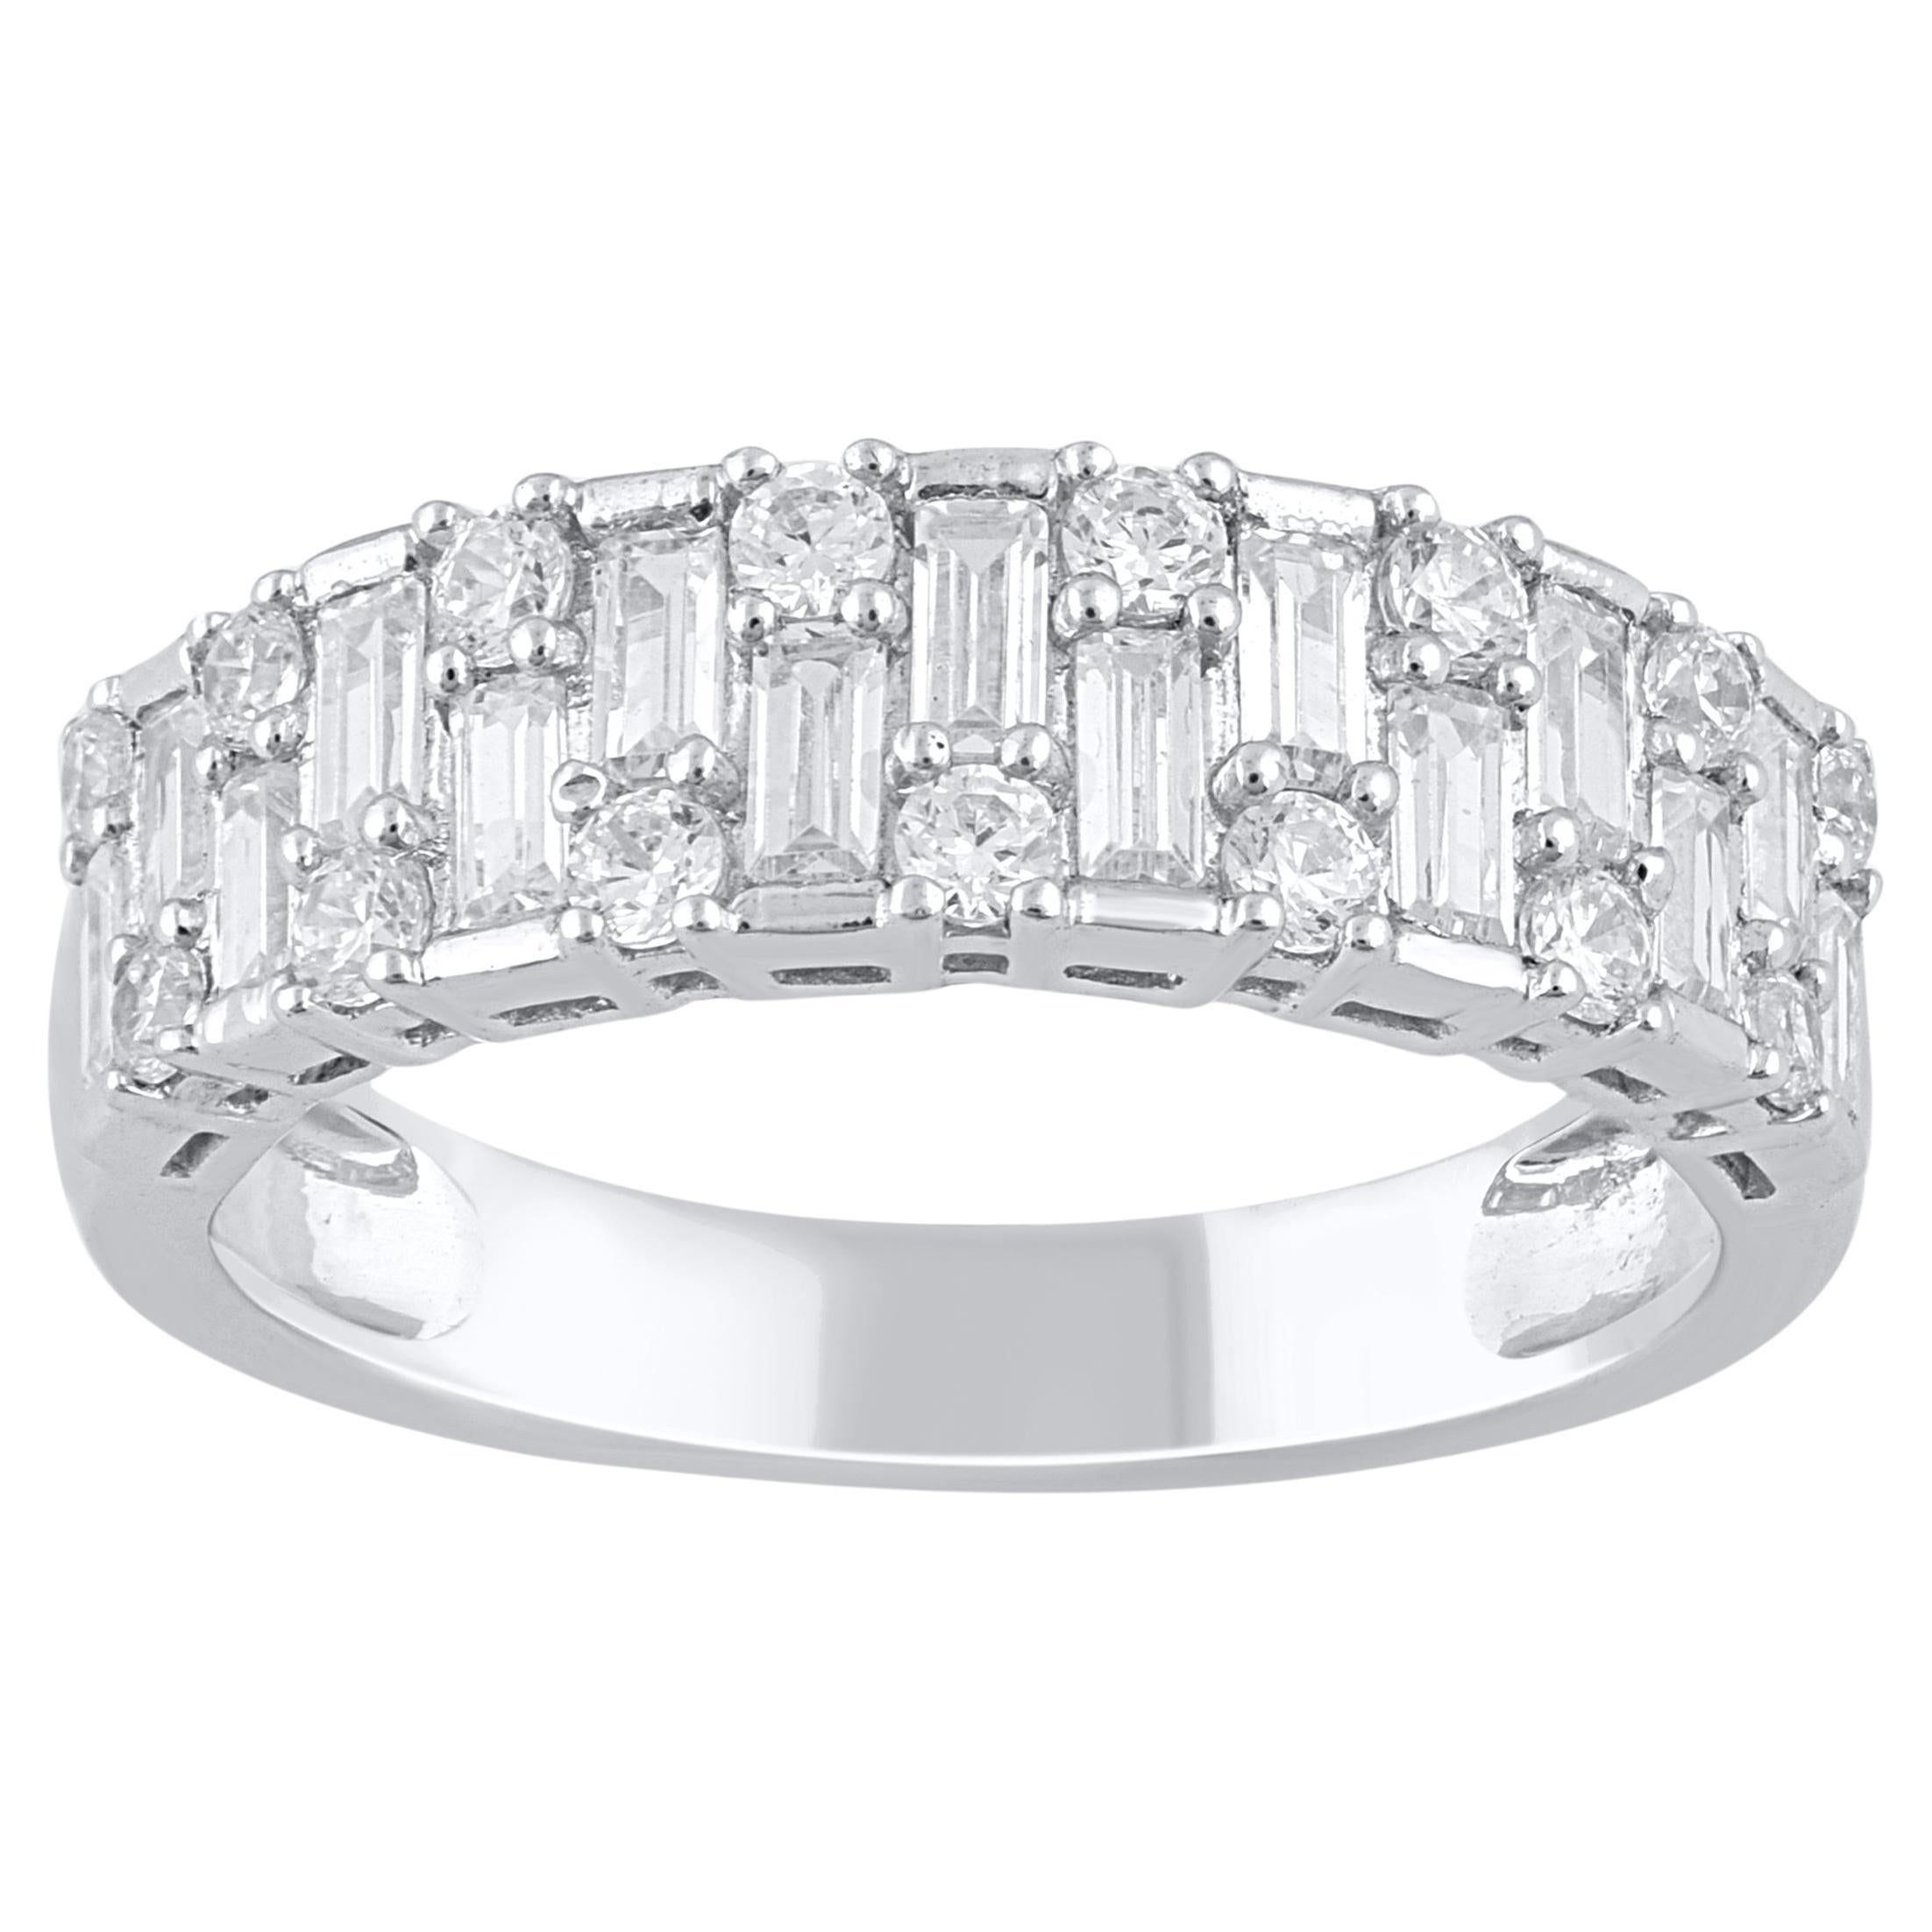 TJD 1.0 Carat Natural Diamond 14 Karat White Gold Wedding Band Ring For Sale